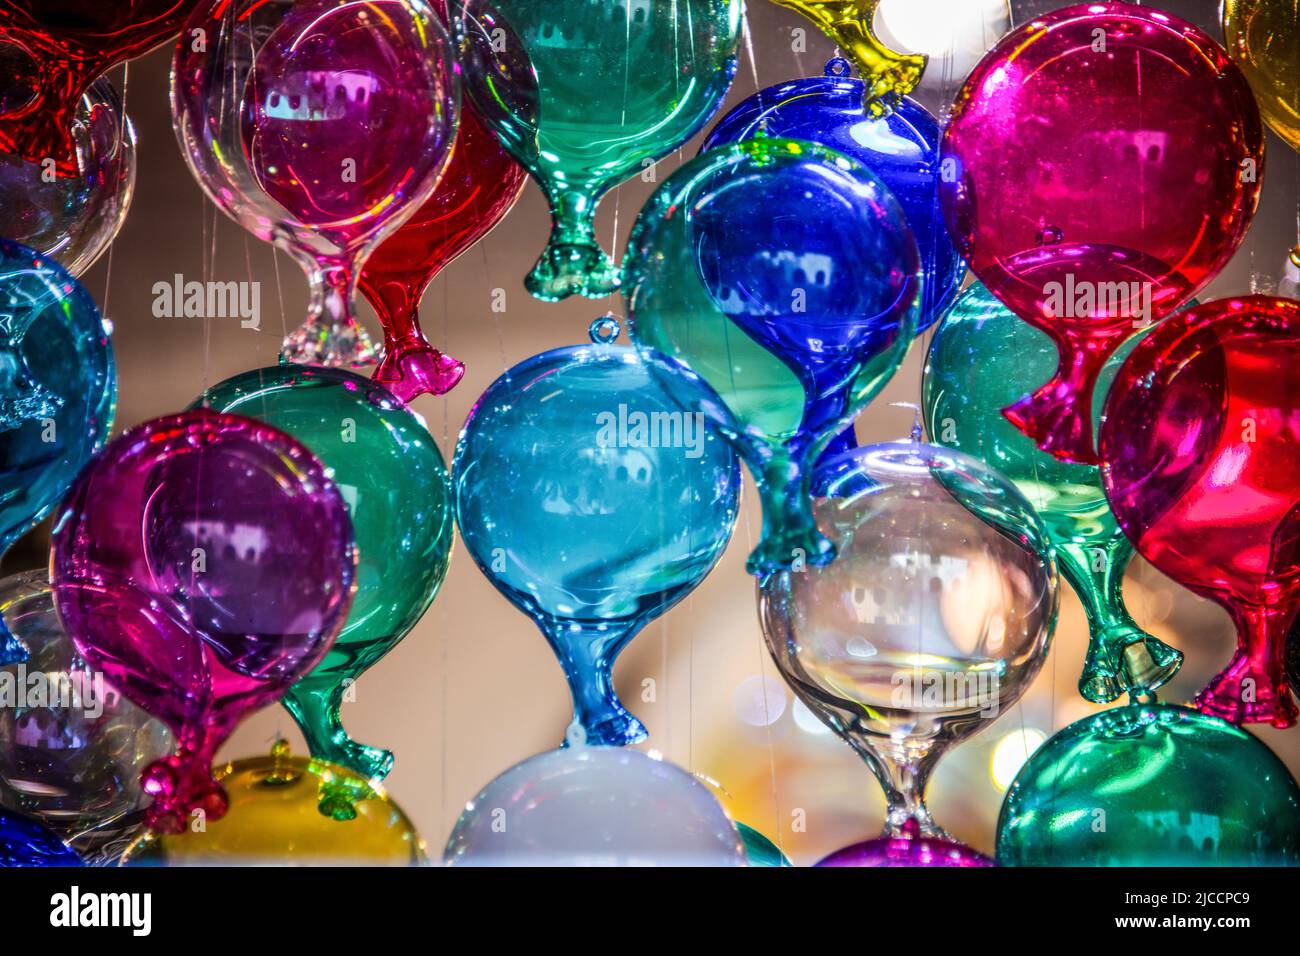 De nombreuses ballons en verre de différentes couleurs accrochés au plafond Banque D'Images